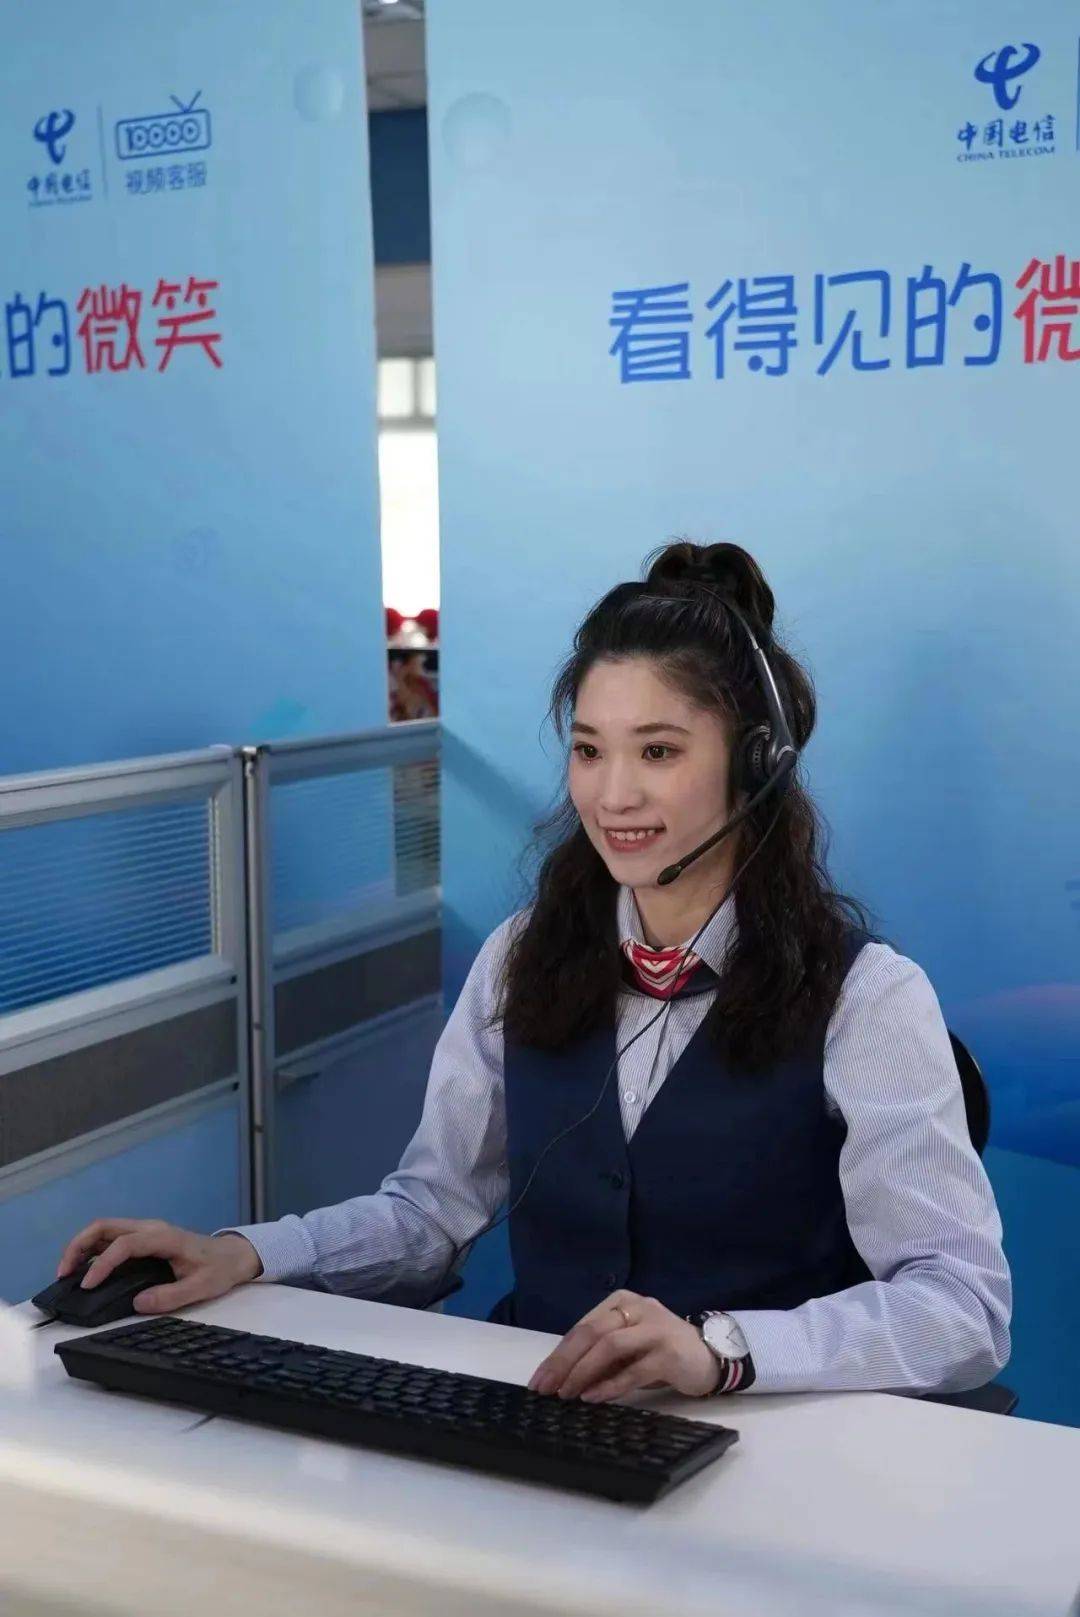 上海电信10000客服热线还开通了英文座席,为用户提供故障报修,账务